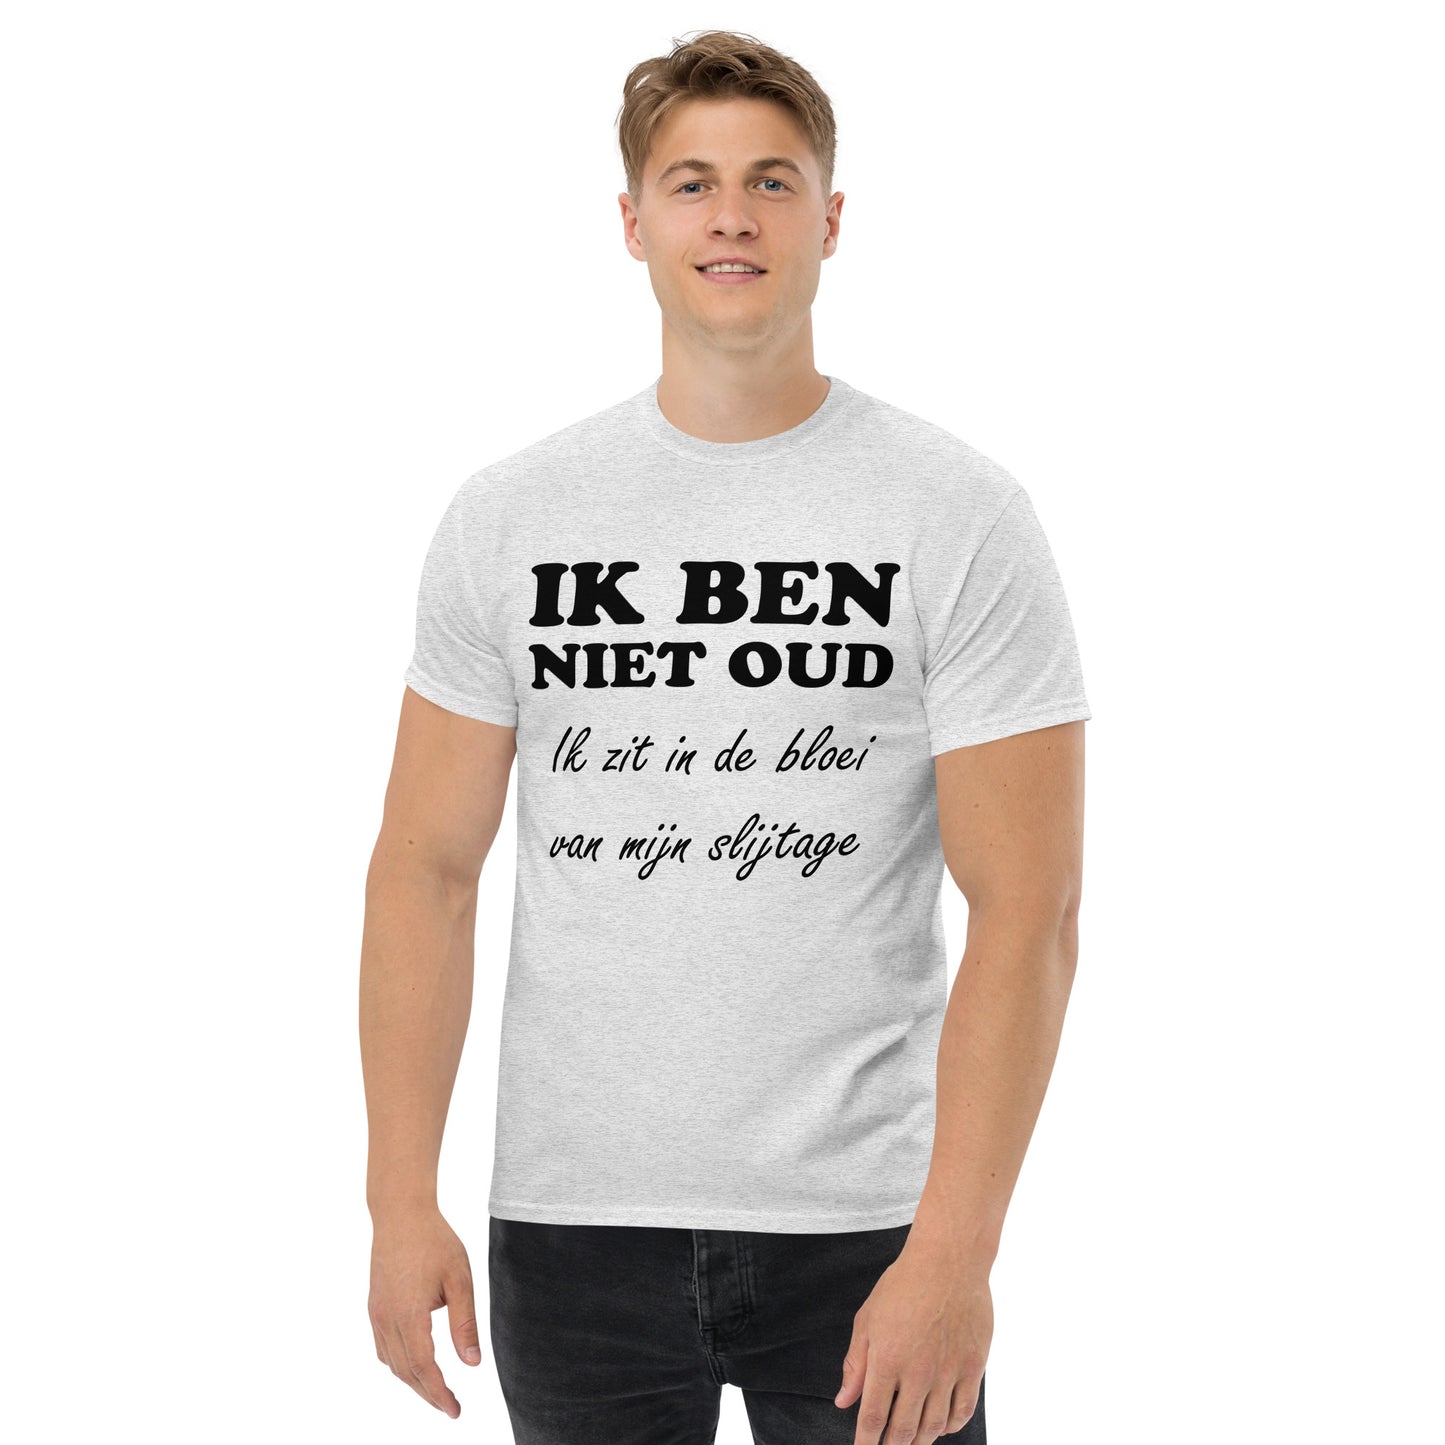 Ash T-shirt with the text "IK BEN NIET OUD ik zit in de bloei van mijn slijtage"